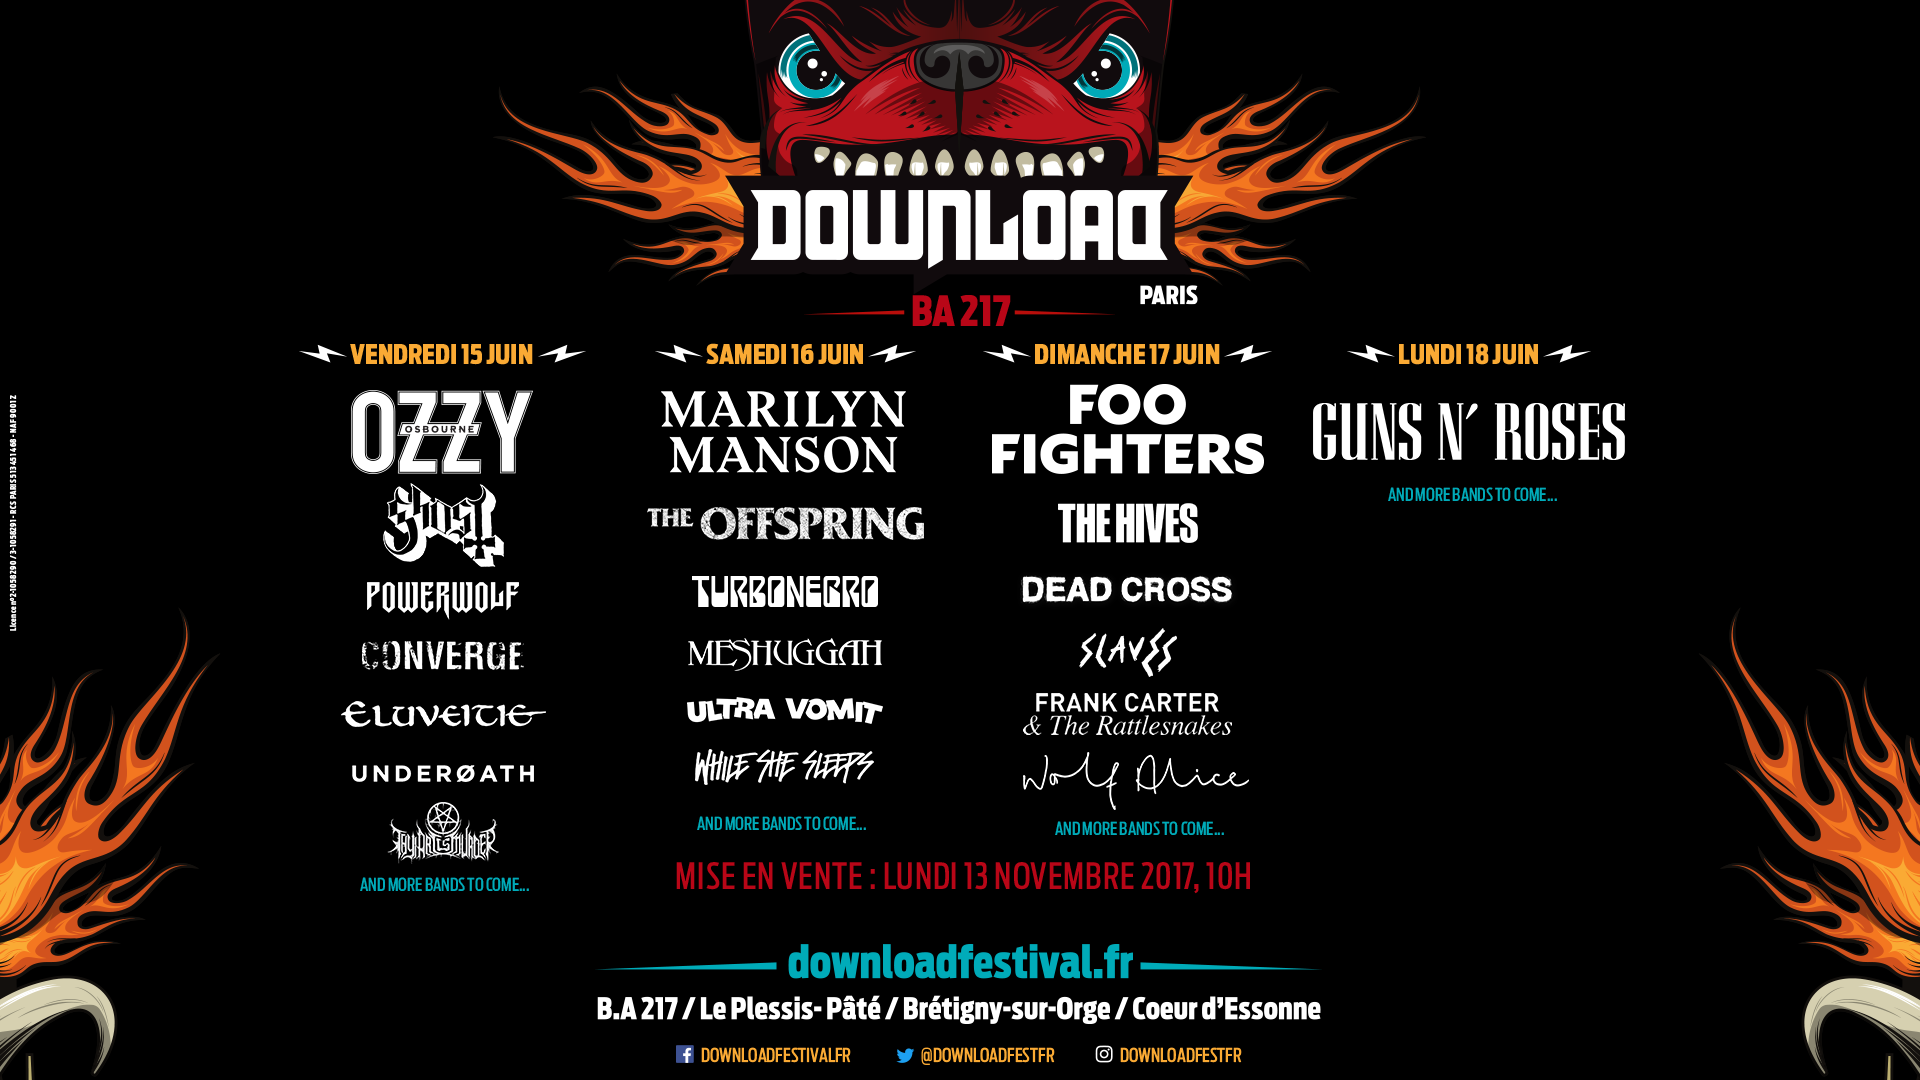 Download Festival France 2018